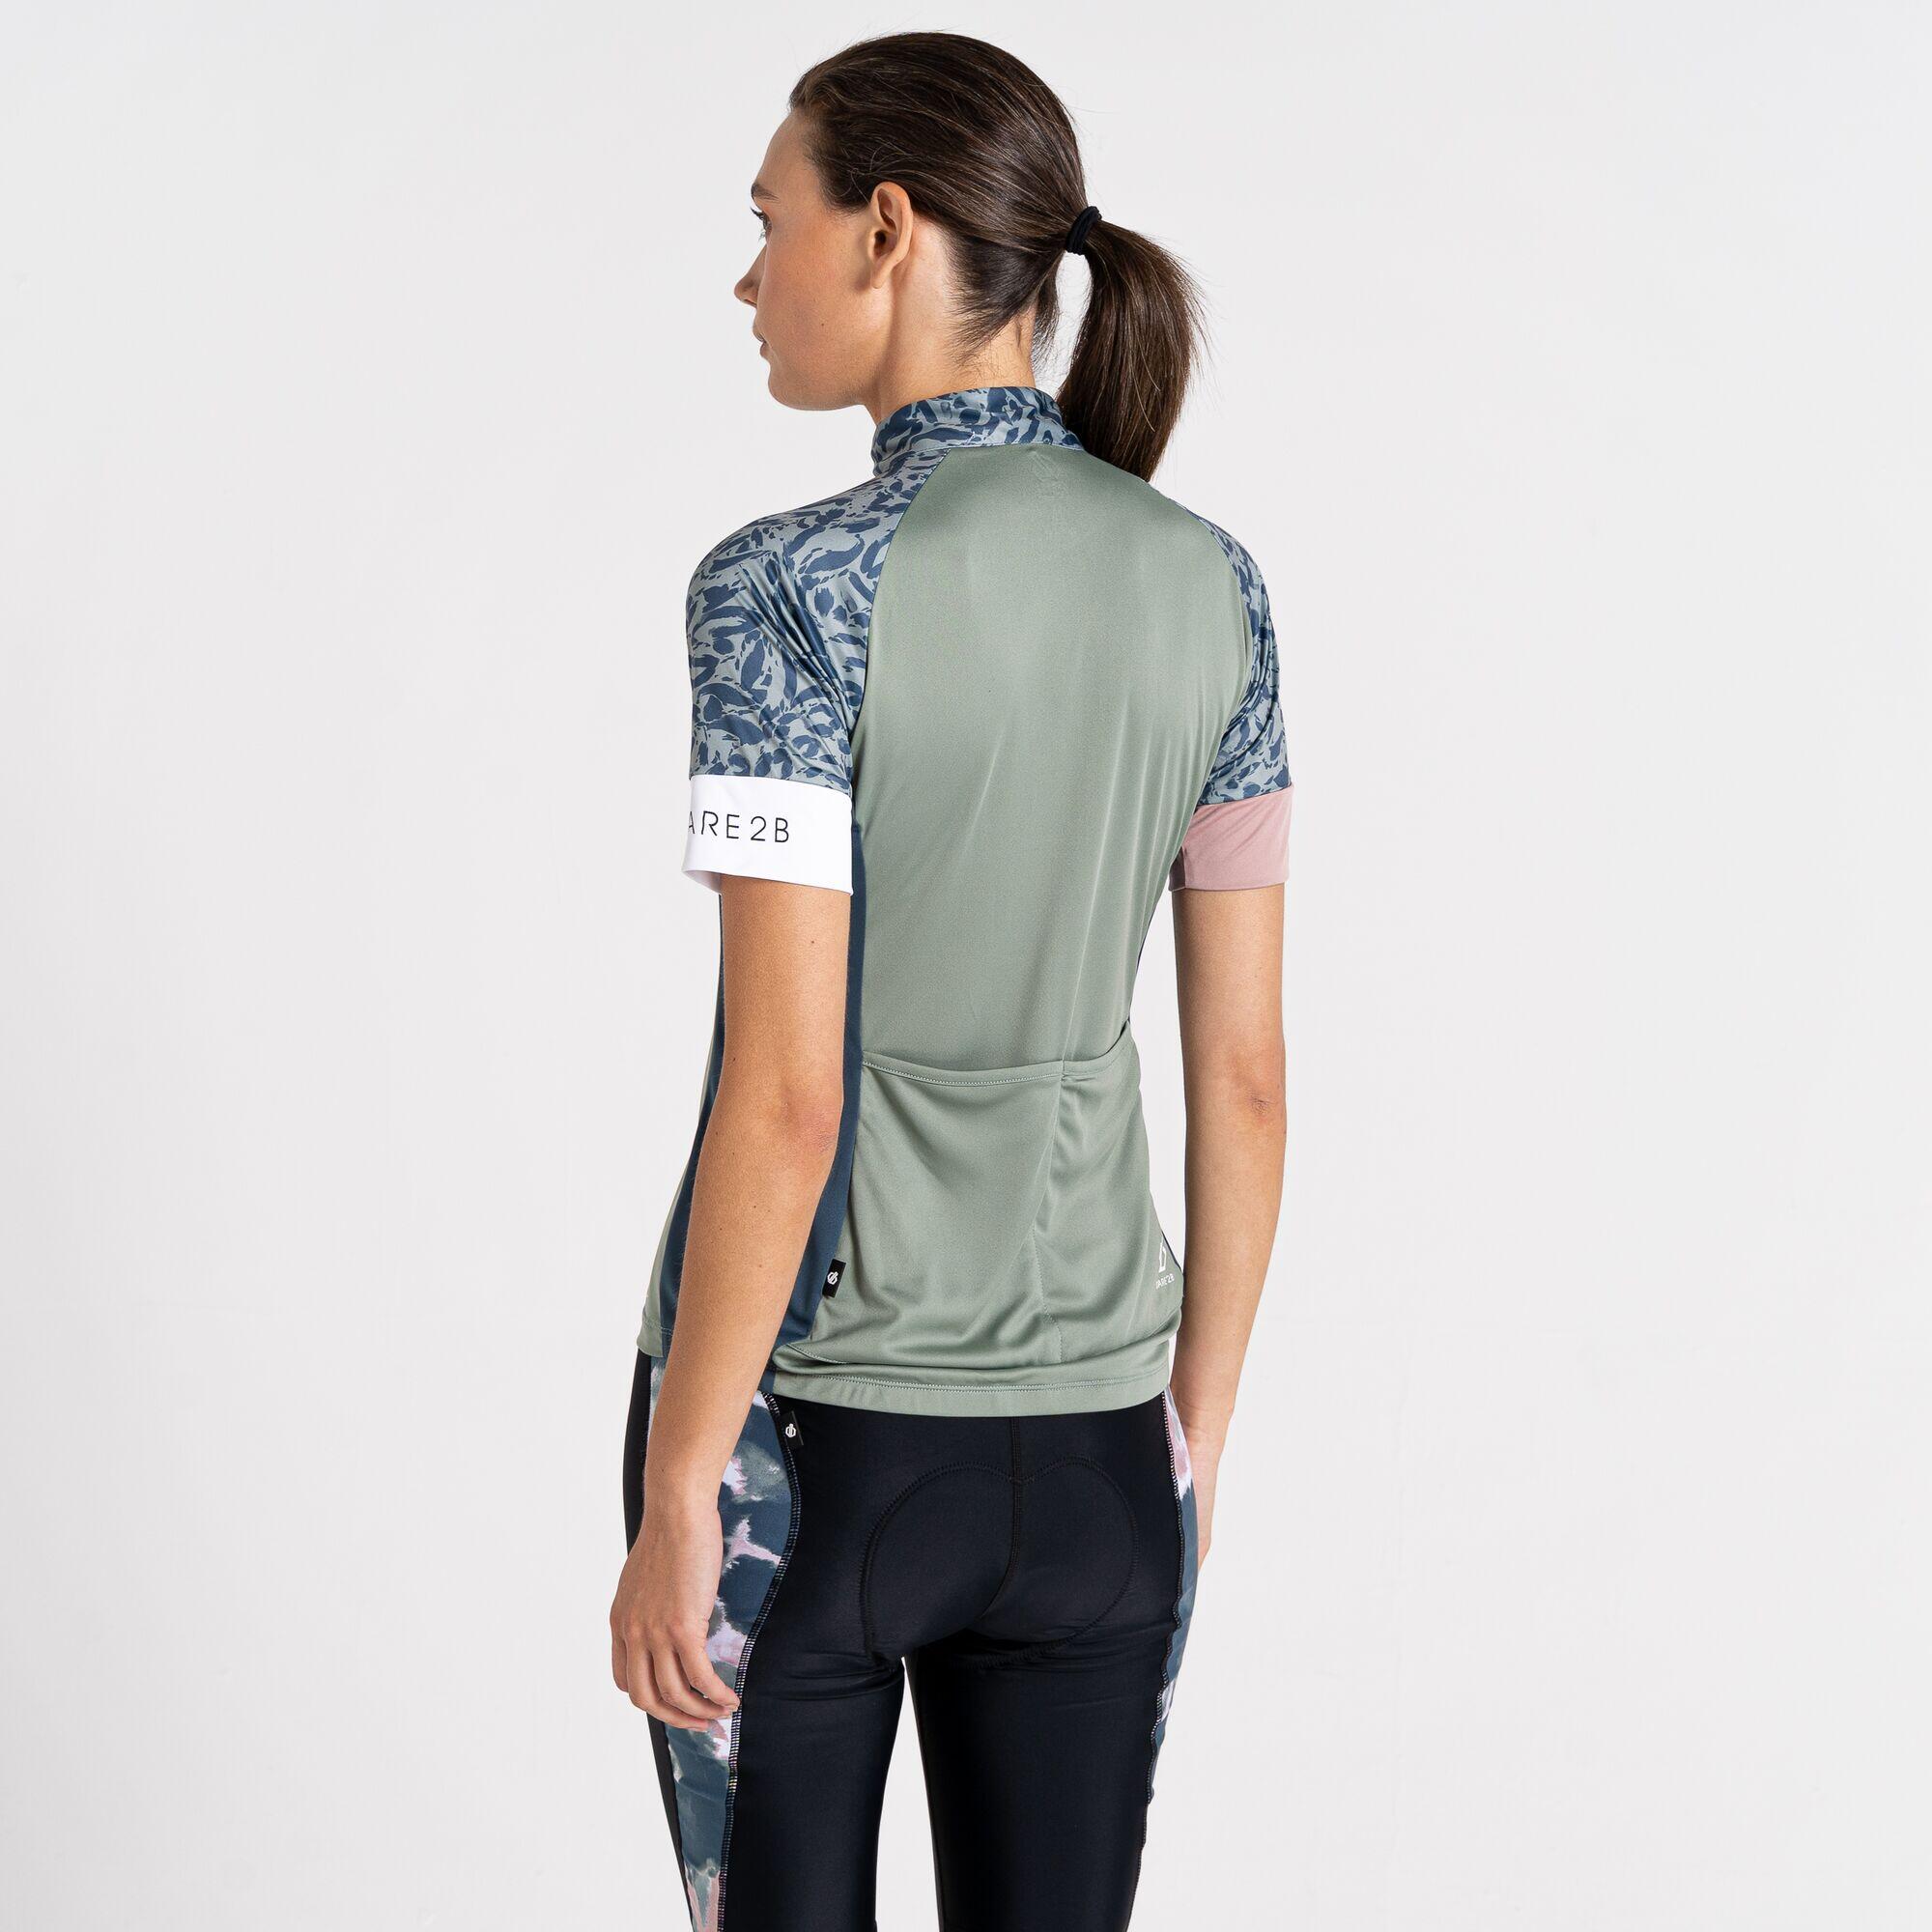 Follow Through Women's Cycling Half Zip, Short Sleeve Jersey 3/7